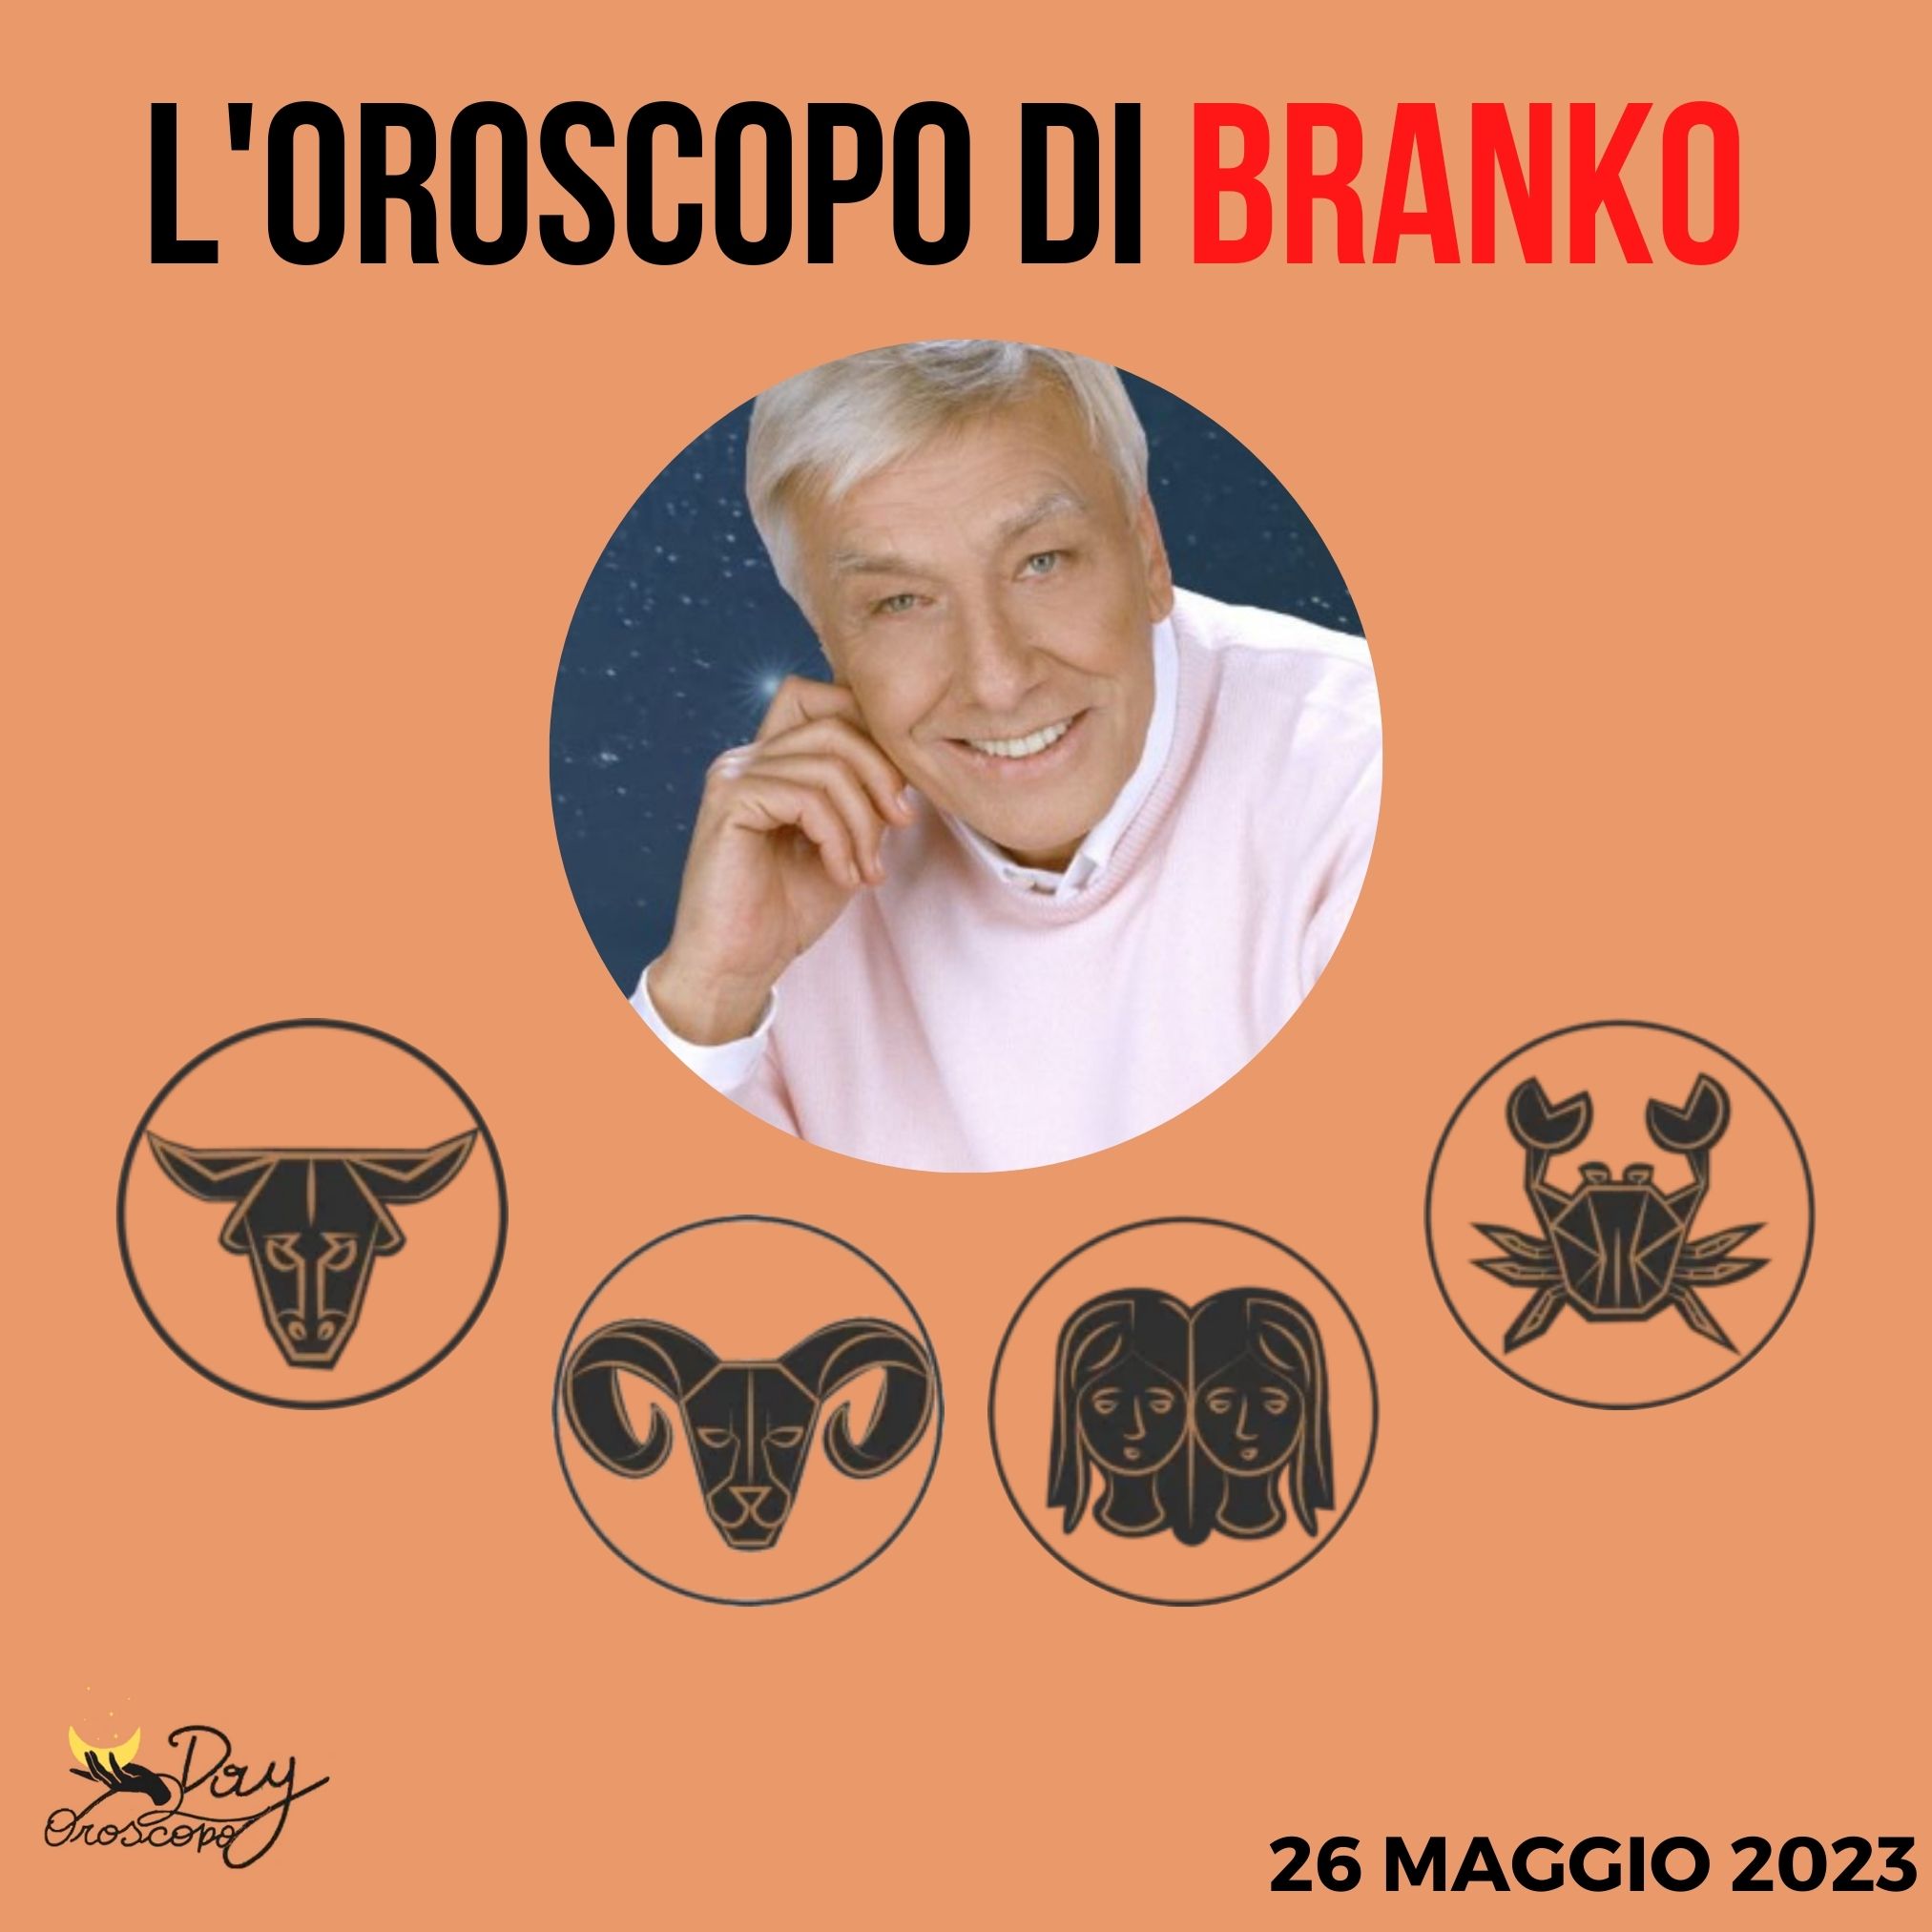 Oroscopo oggi domani Branko 26 maggio Toro Ariete Gemelli Cancro